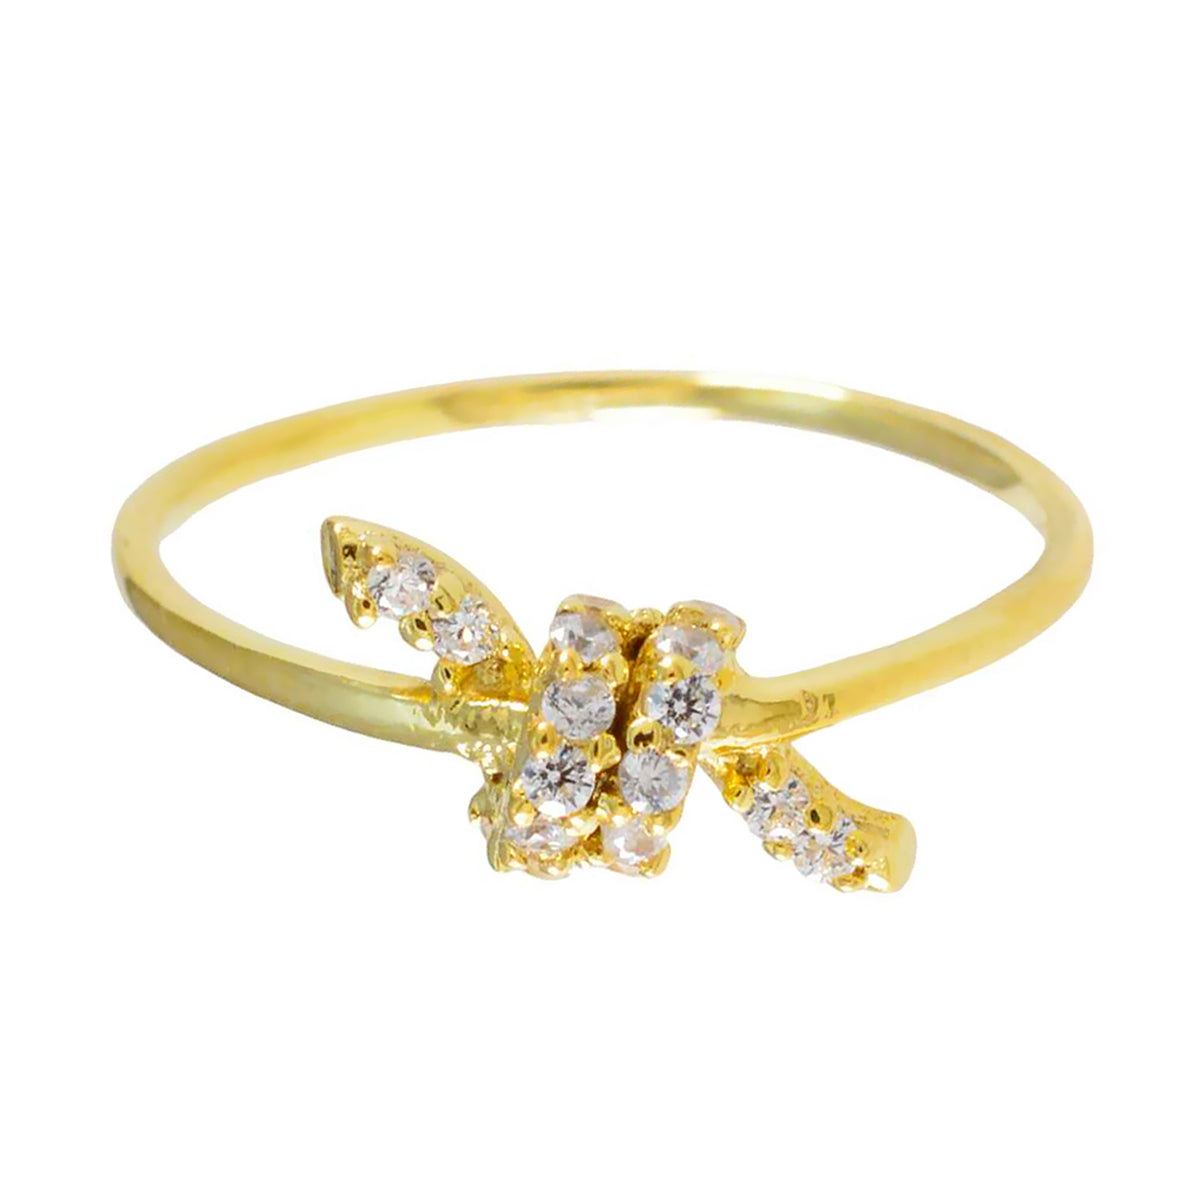 riyo поставляет серебряное кольцо с покрытием из желтого золота, кольцо с зубцом круглой формы из белого камня cz